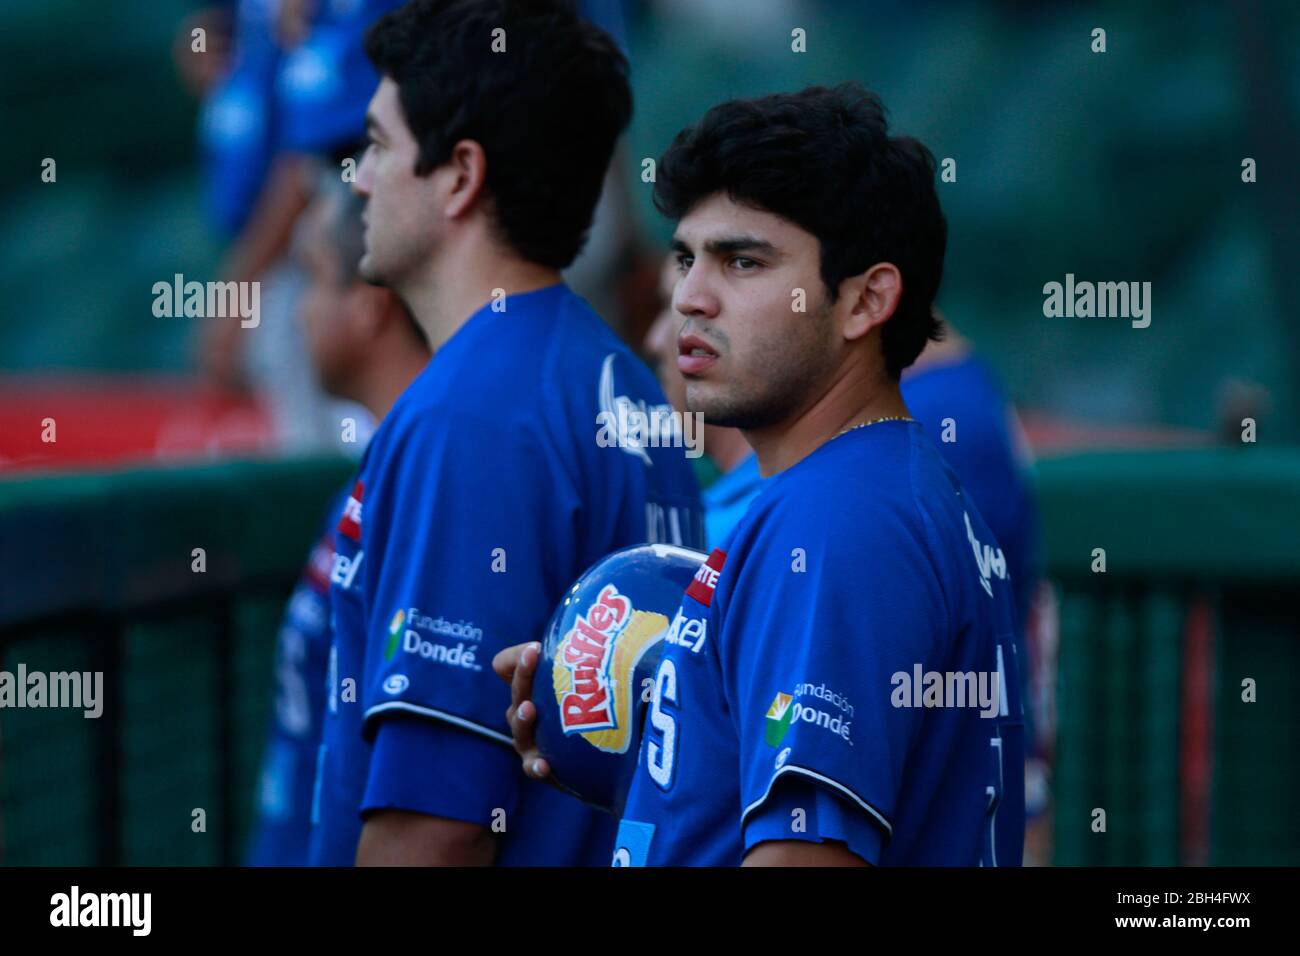 Yaquis de obregon team .Baseball, Beisbol. LMP, liga mexicana del Pacifico. 18 nov 2013 Foto Stock